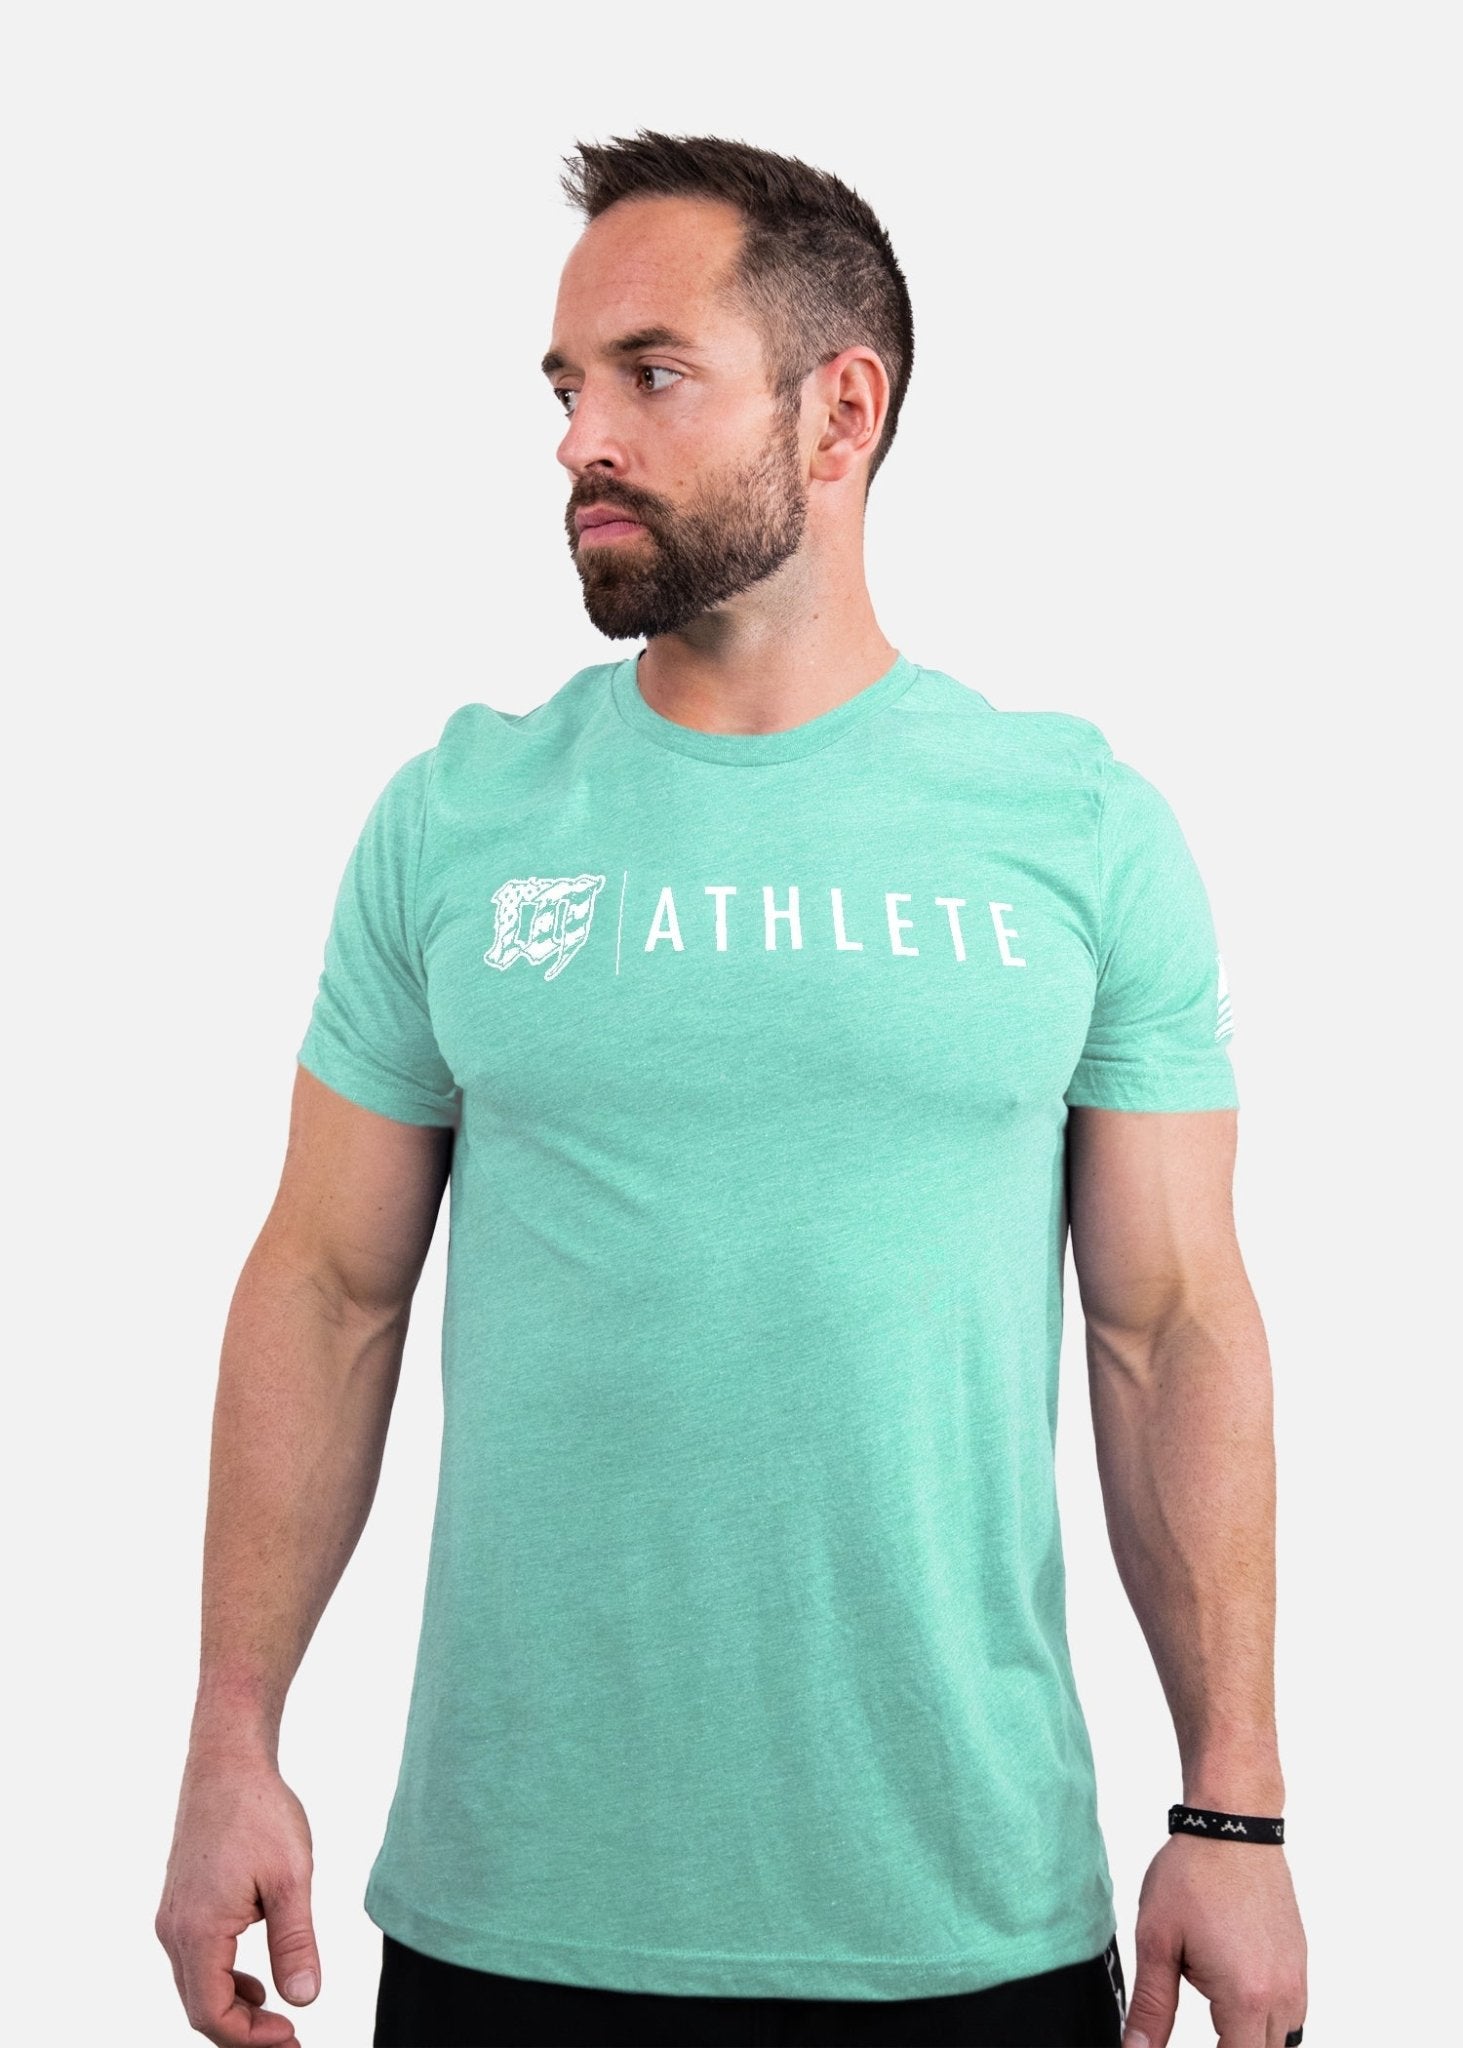 Mayhem Athlete T-Shirt - Bright Blue / White